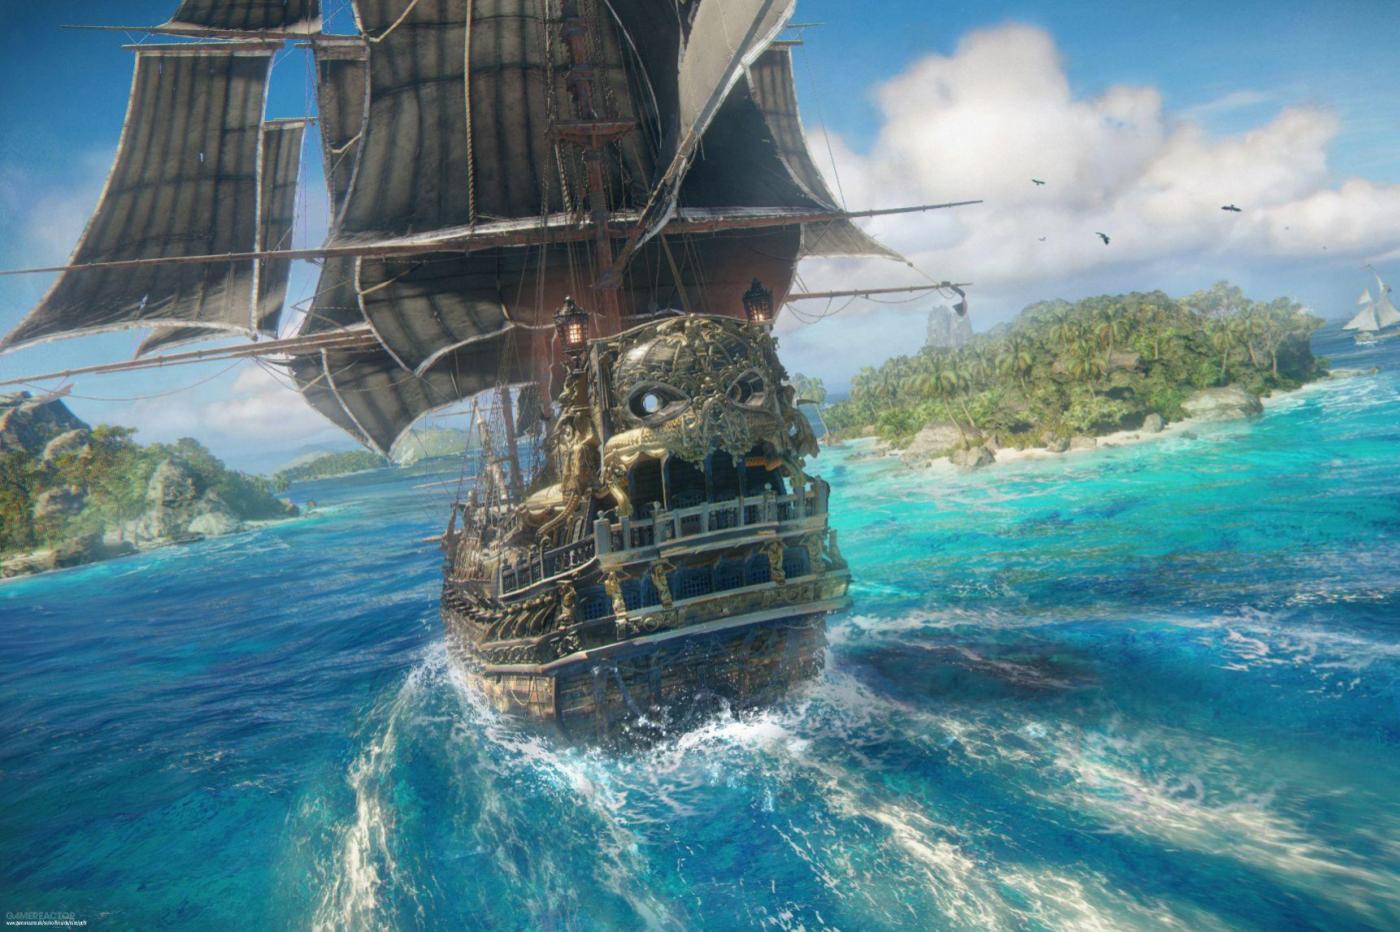 Image du jeu Skull and Bones montrant un bateau Pirates sur des eaux bleues en direction d'îles